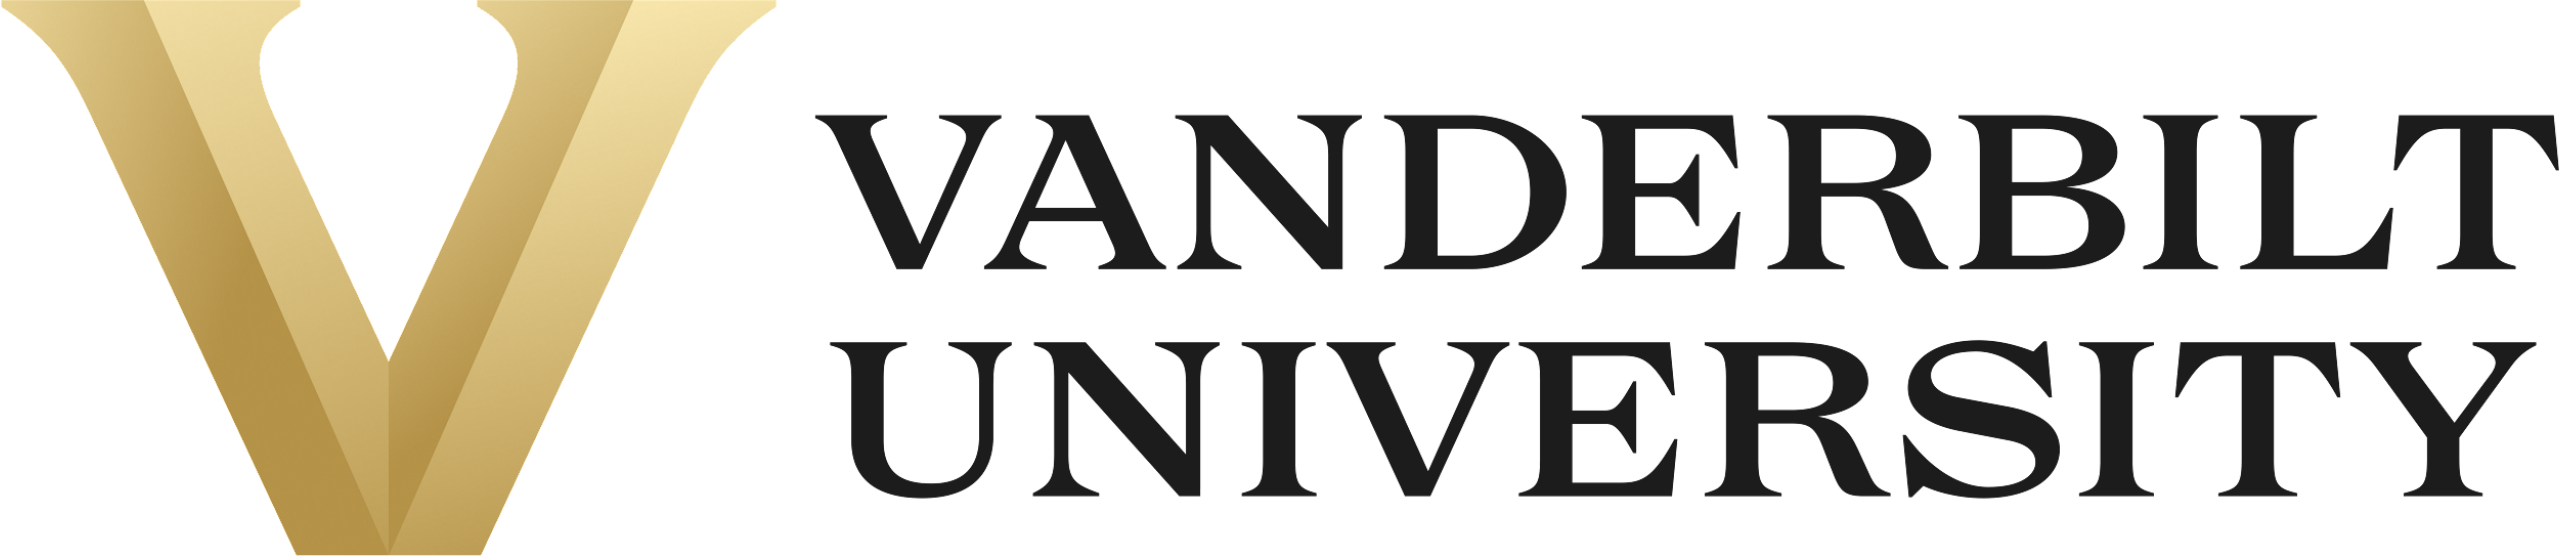 Vanderbilt_University_logo.svg-2